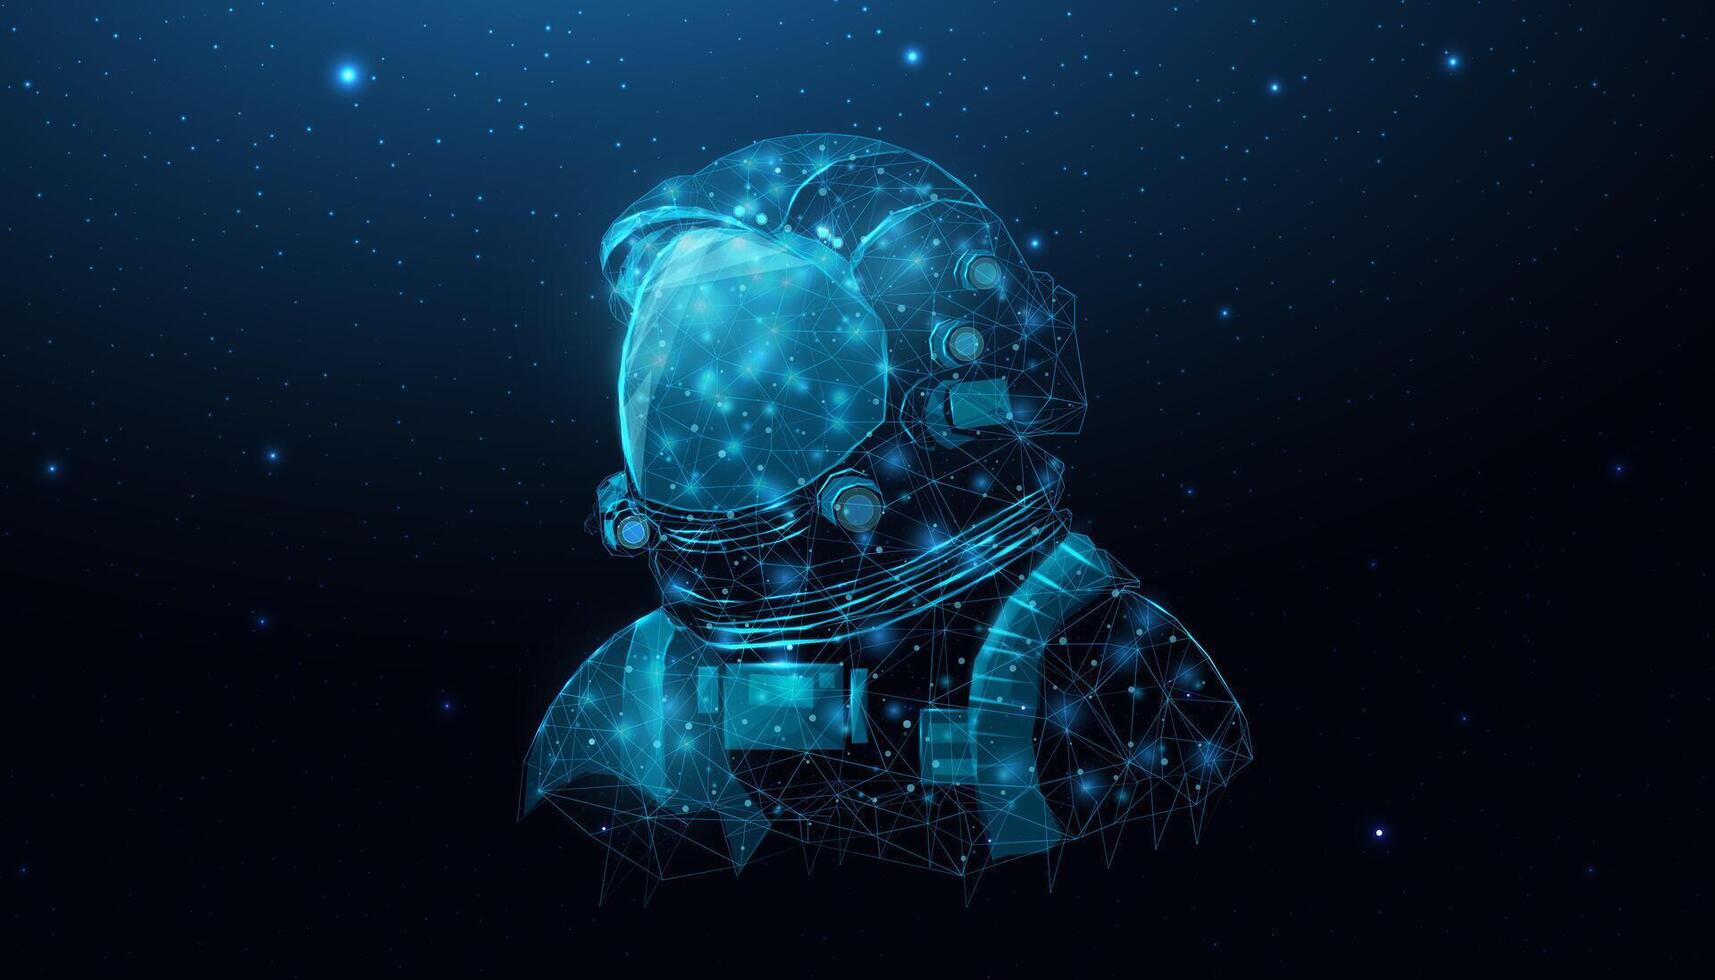 wireframe astronaut in ruimte heelal dichtbij omhoog. futuristische veelhoekige kosmonaut helm, ruimte toerisme concept. sterrenhemel abstract achtergrond met gloeiend menselijk. vector illustratie.